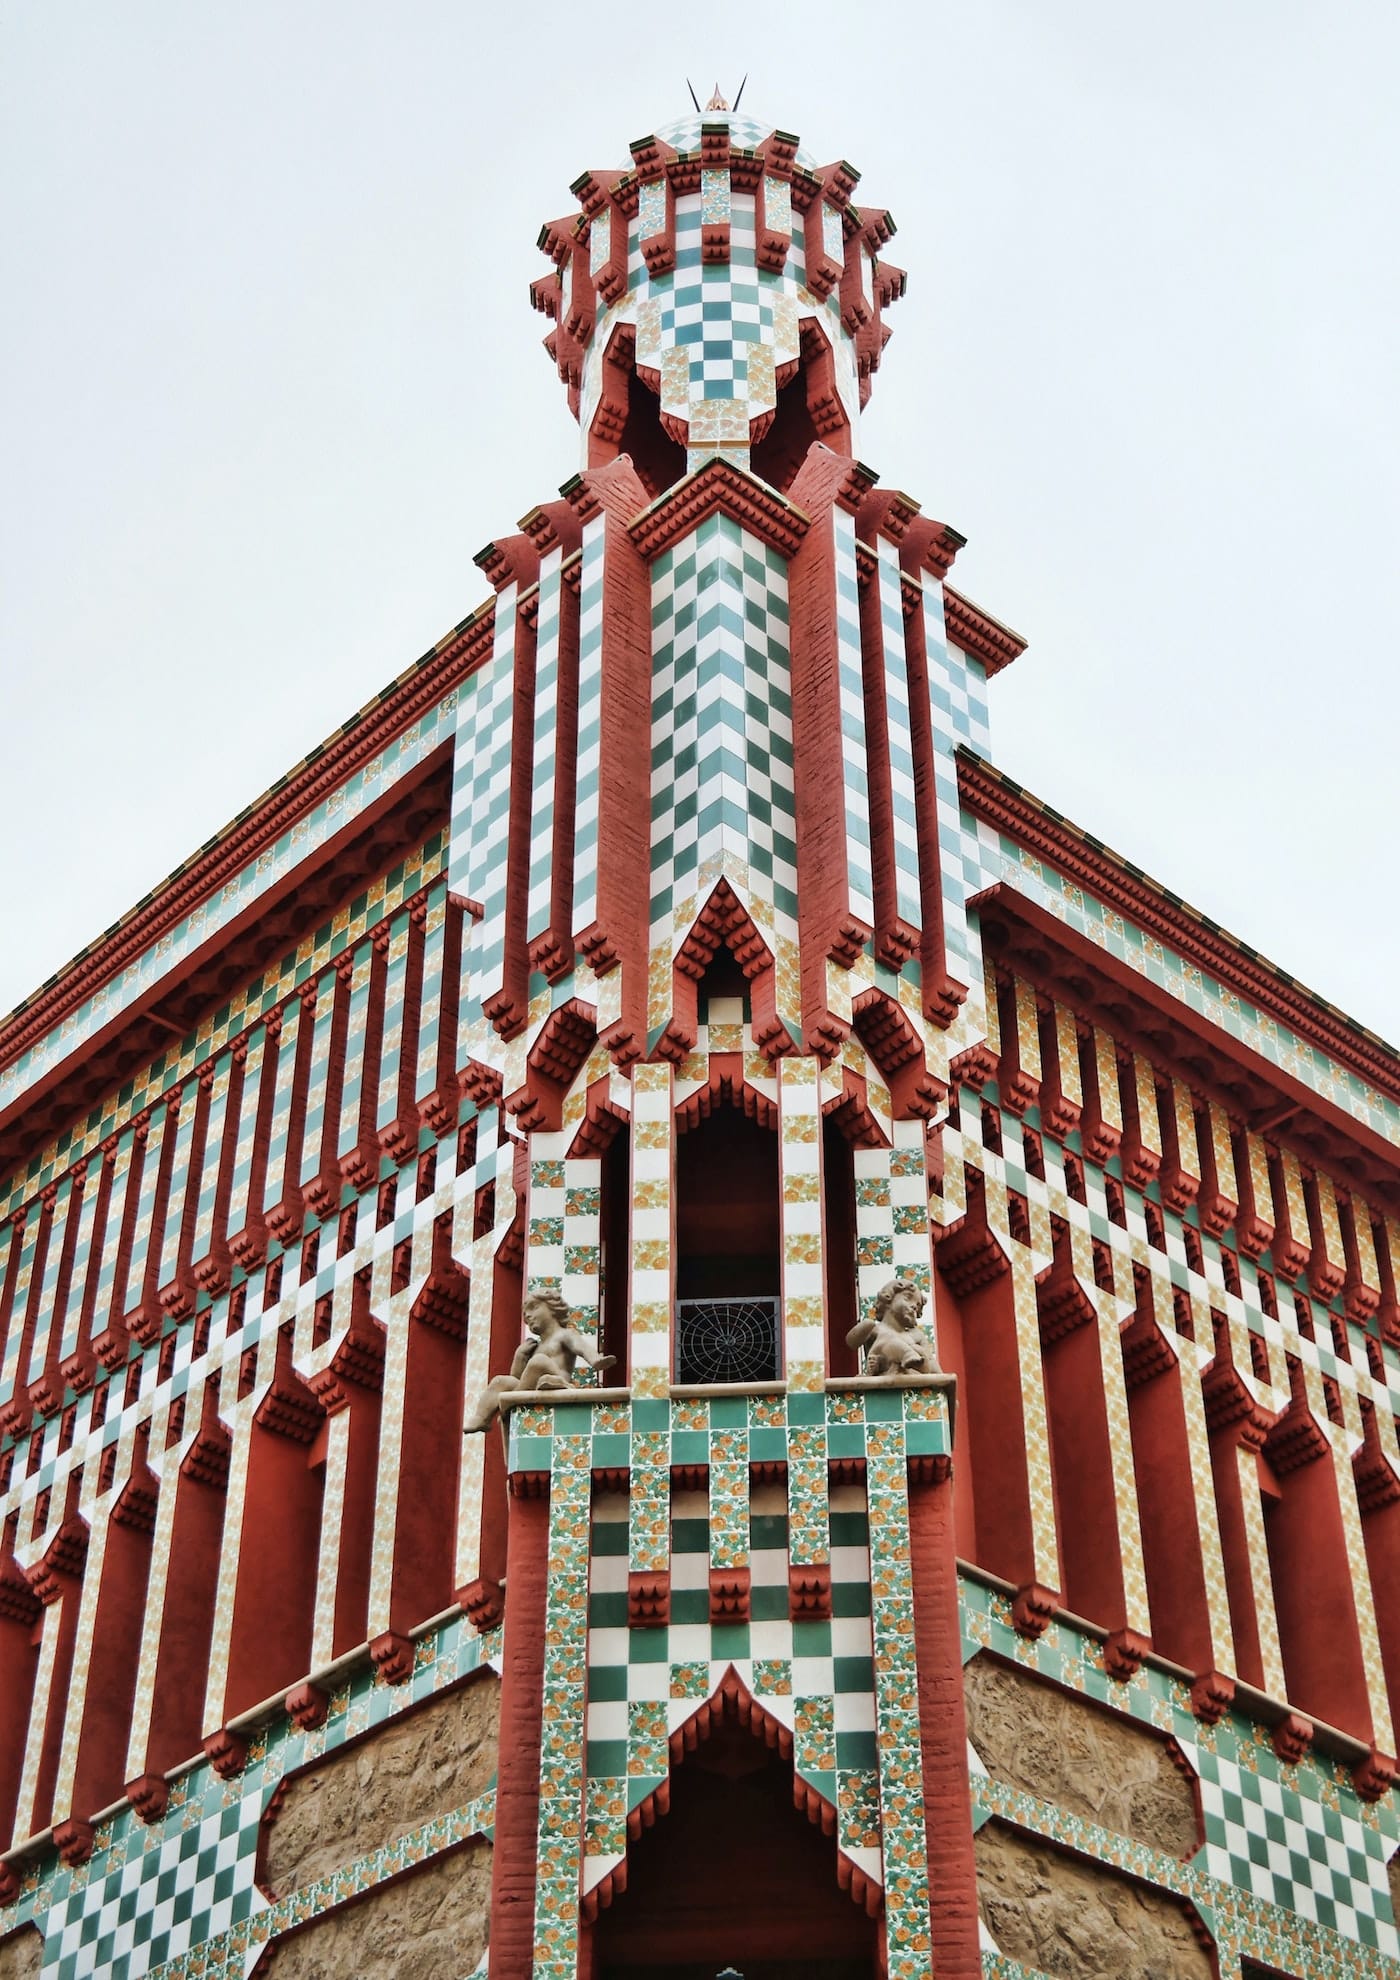 Barcelona Spain typisches Mosaic Gebäude